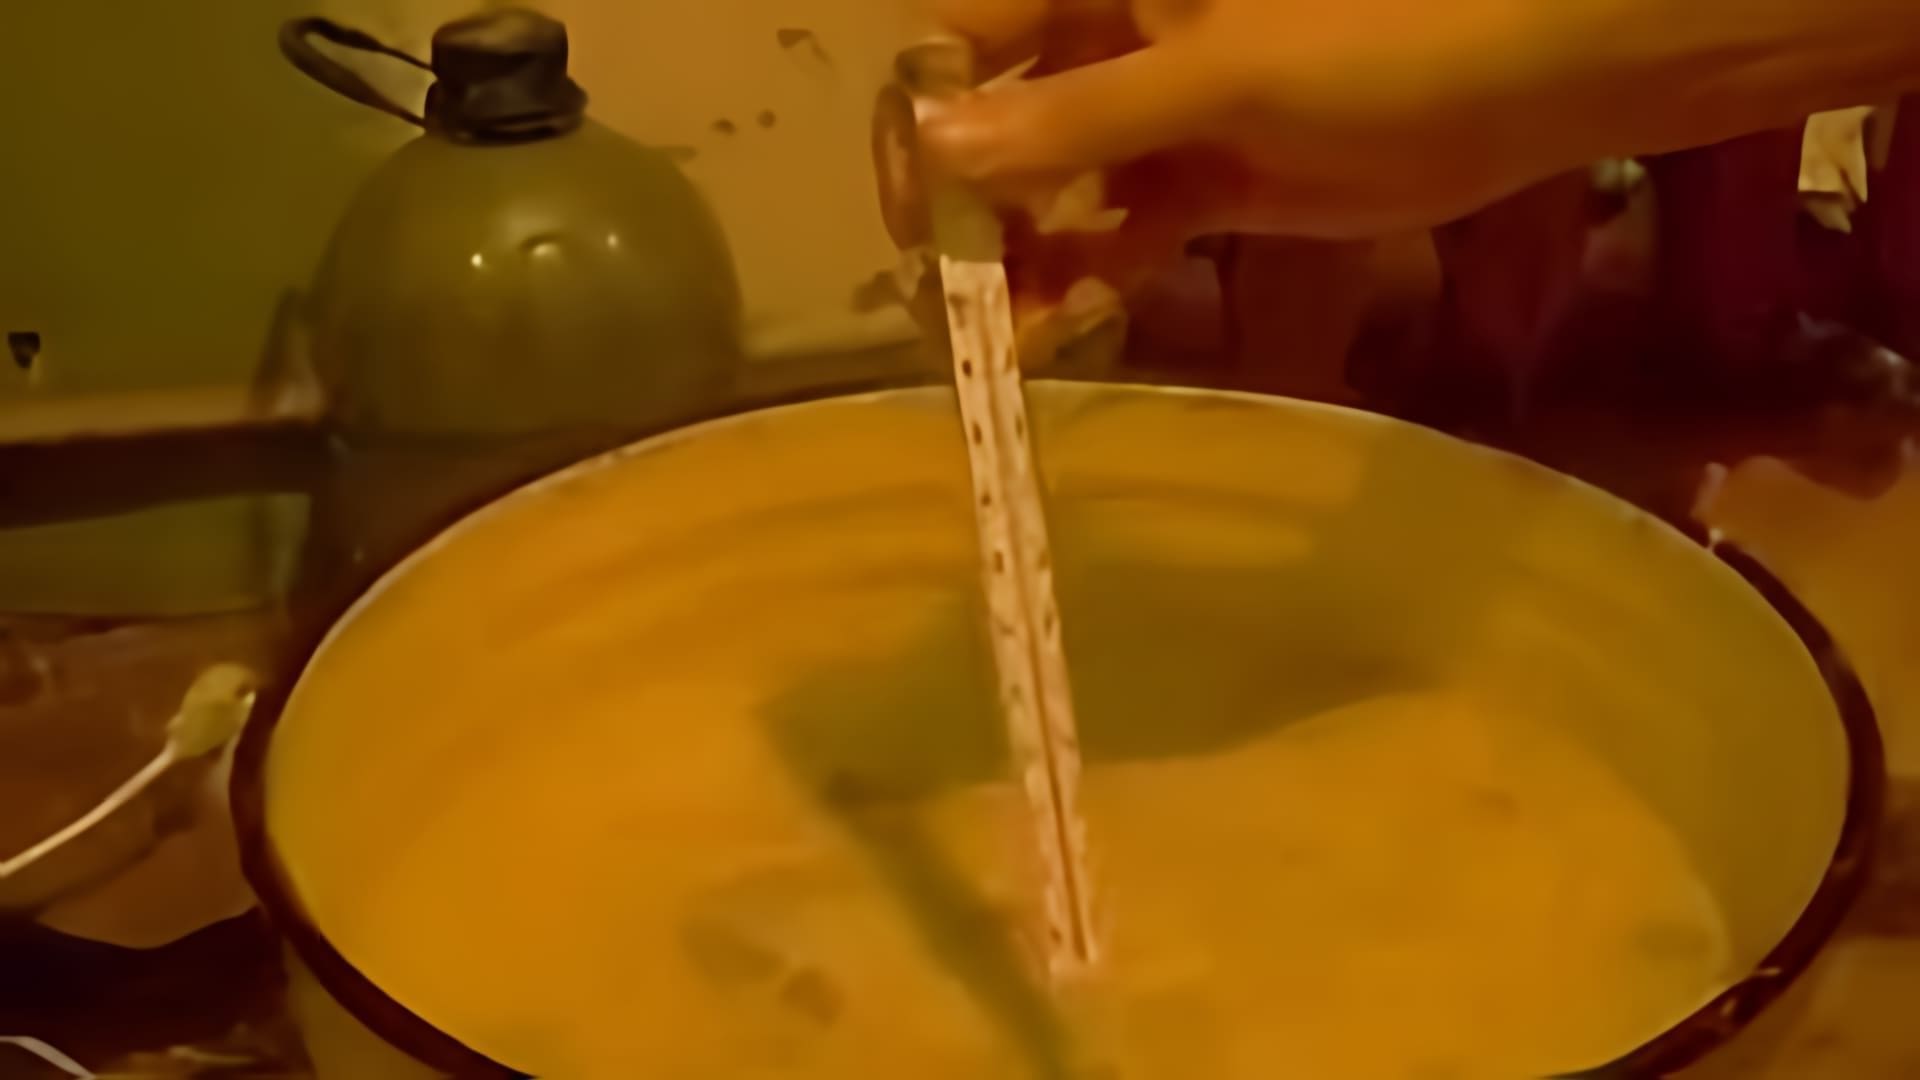 В данном видео демонстрируется процесс приготовления браги из картошки